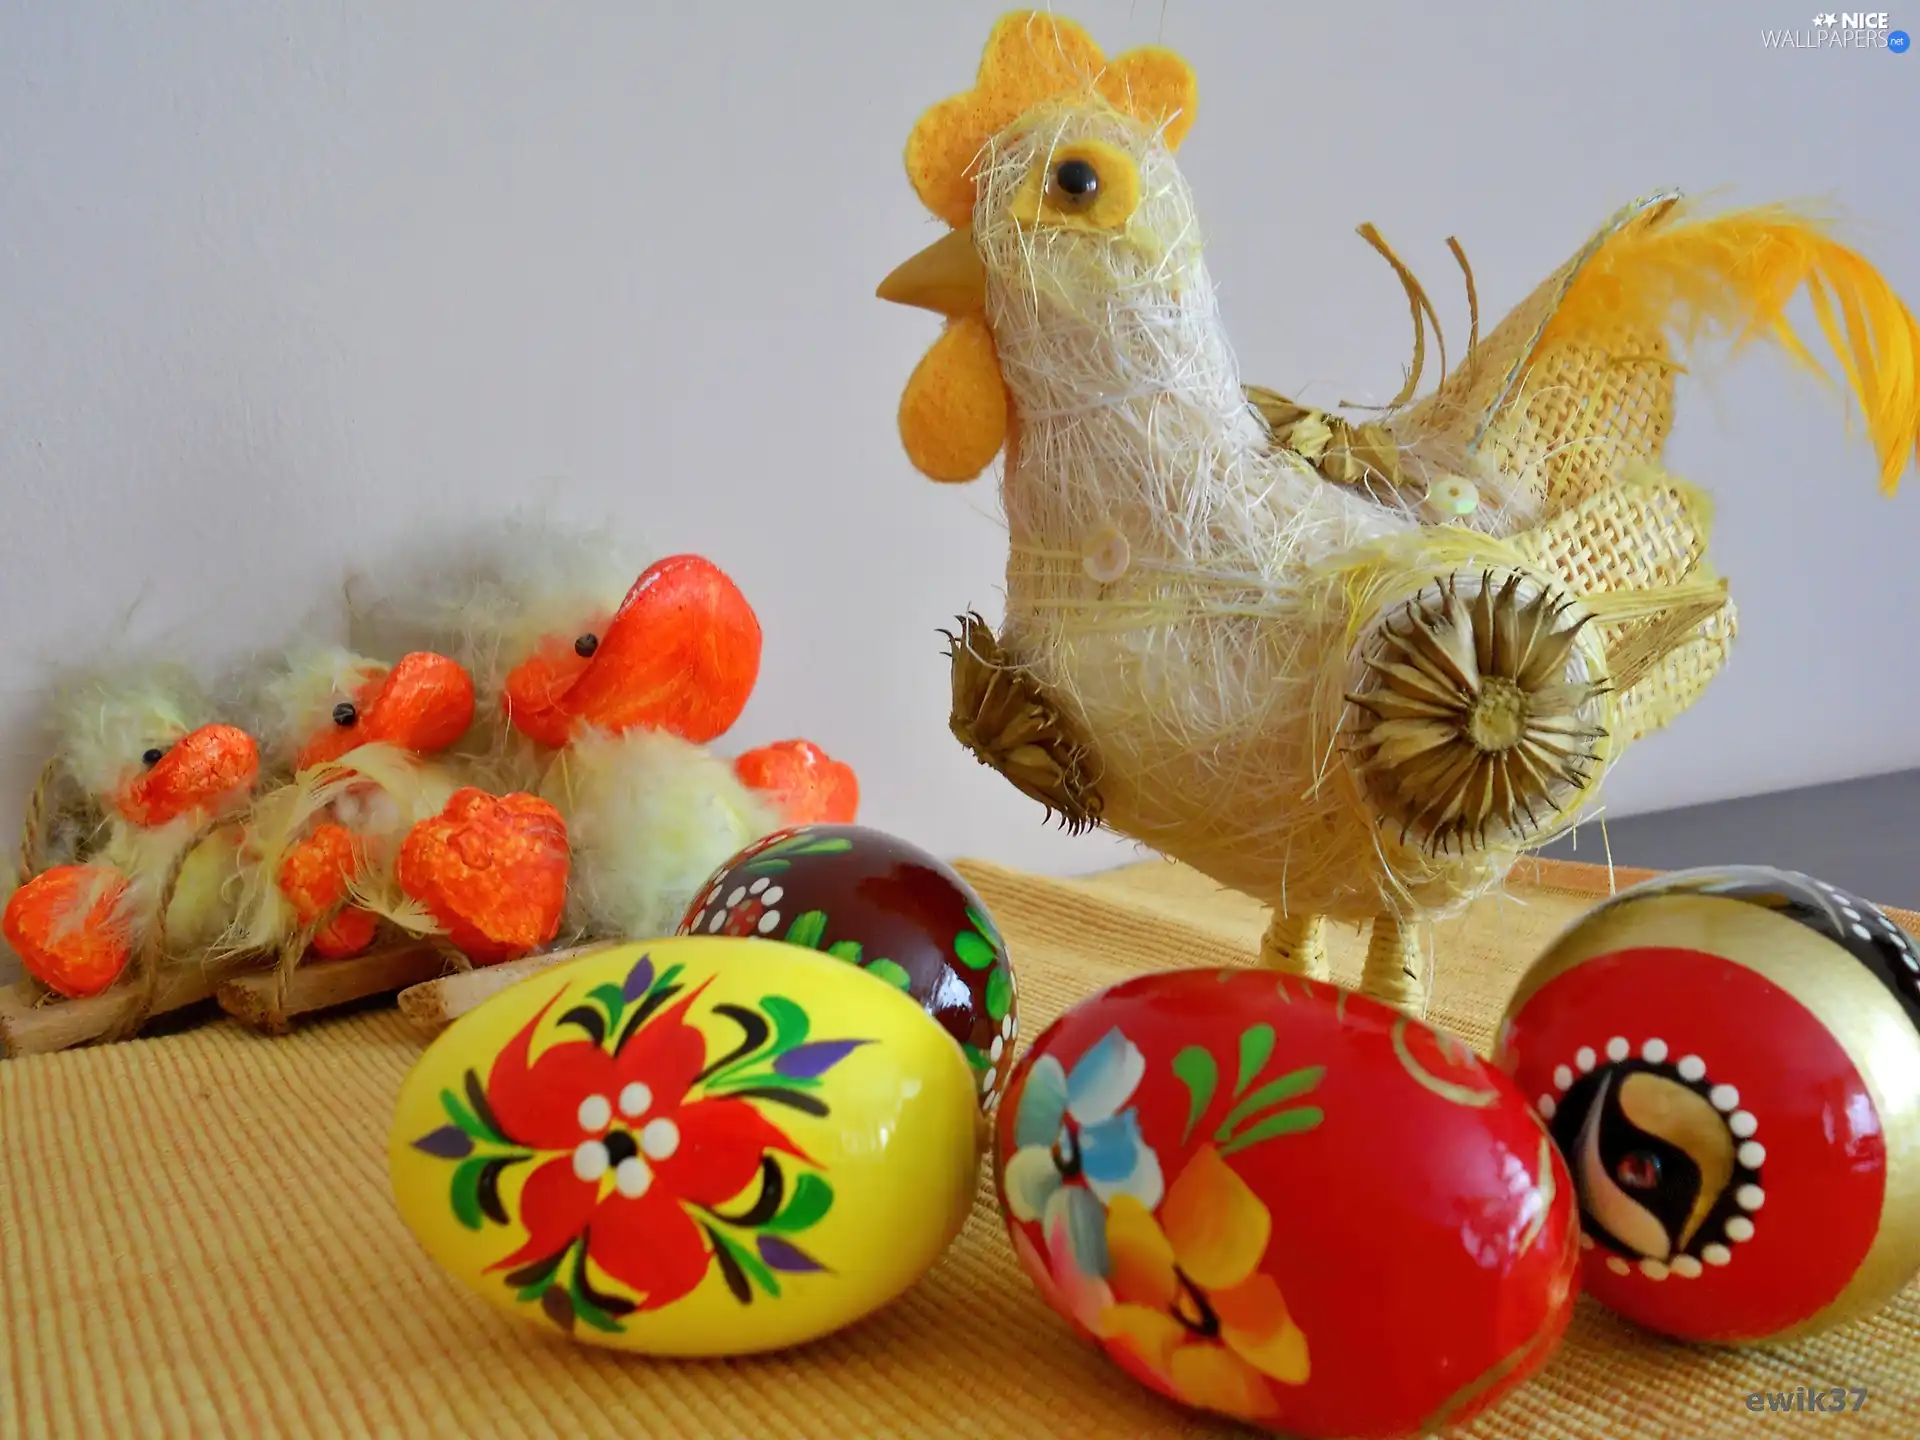 Ducklings, color, eggs, chicken